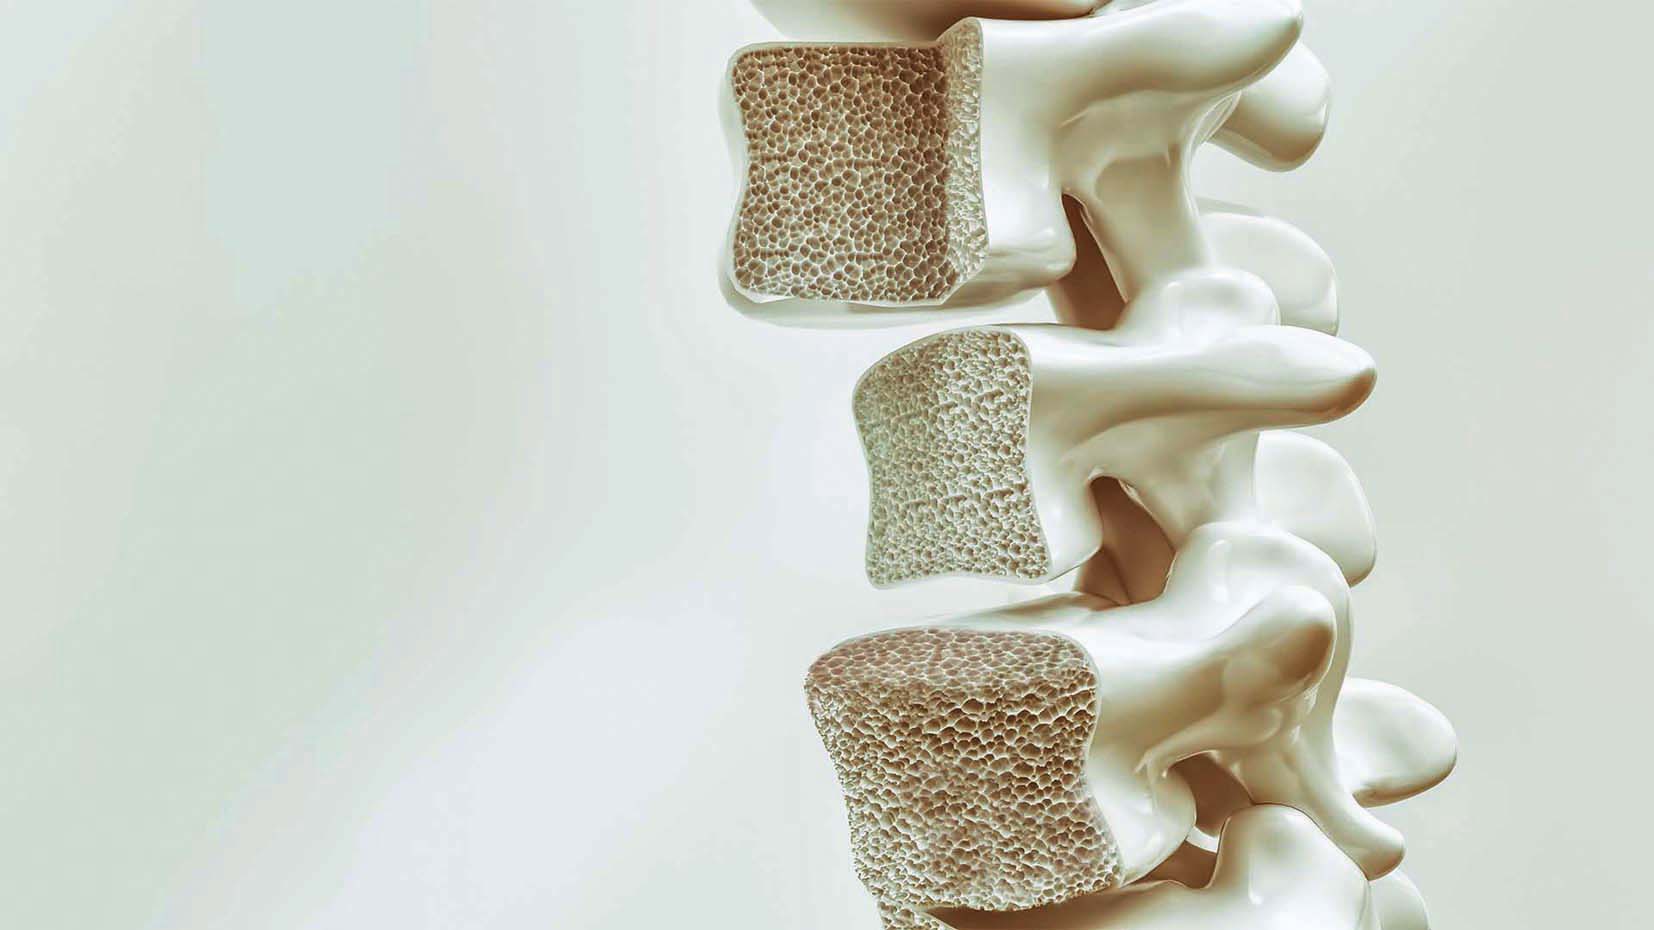 جامعة بازل تعلن عن تقنية جراحية مبتكرة لعلاج هشاشة العظام وآفات غضروف الركبة